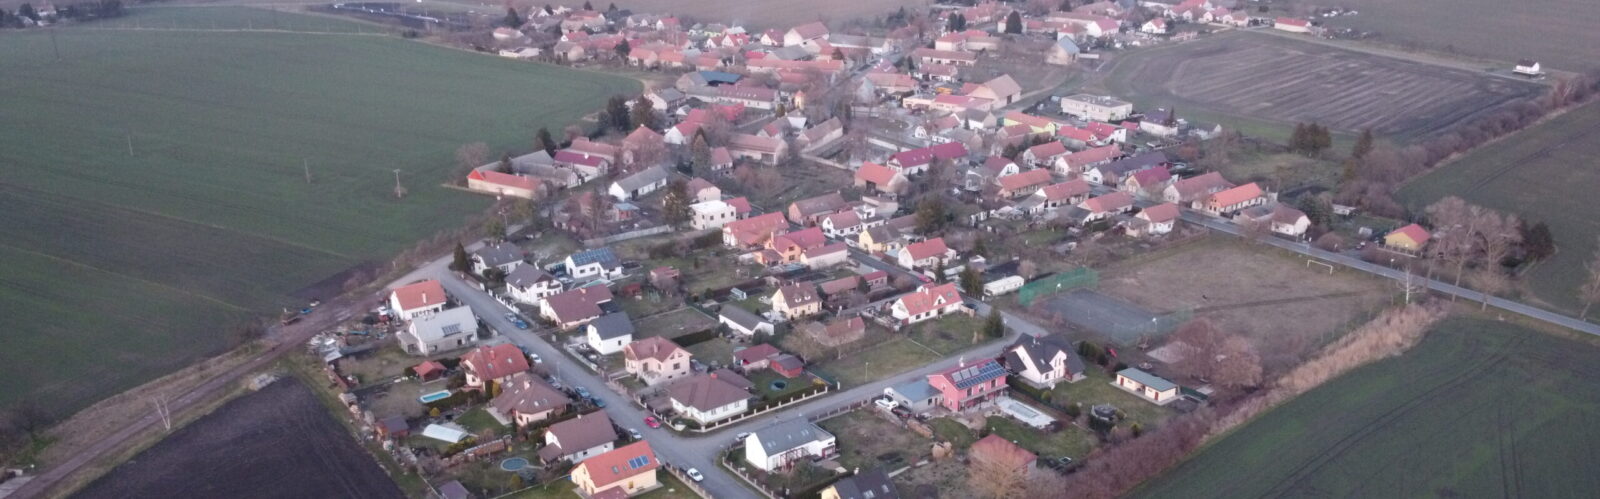 Letecky snimek Obce Kouty z dronu